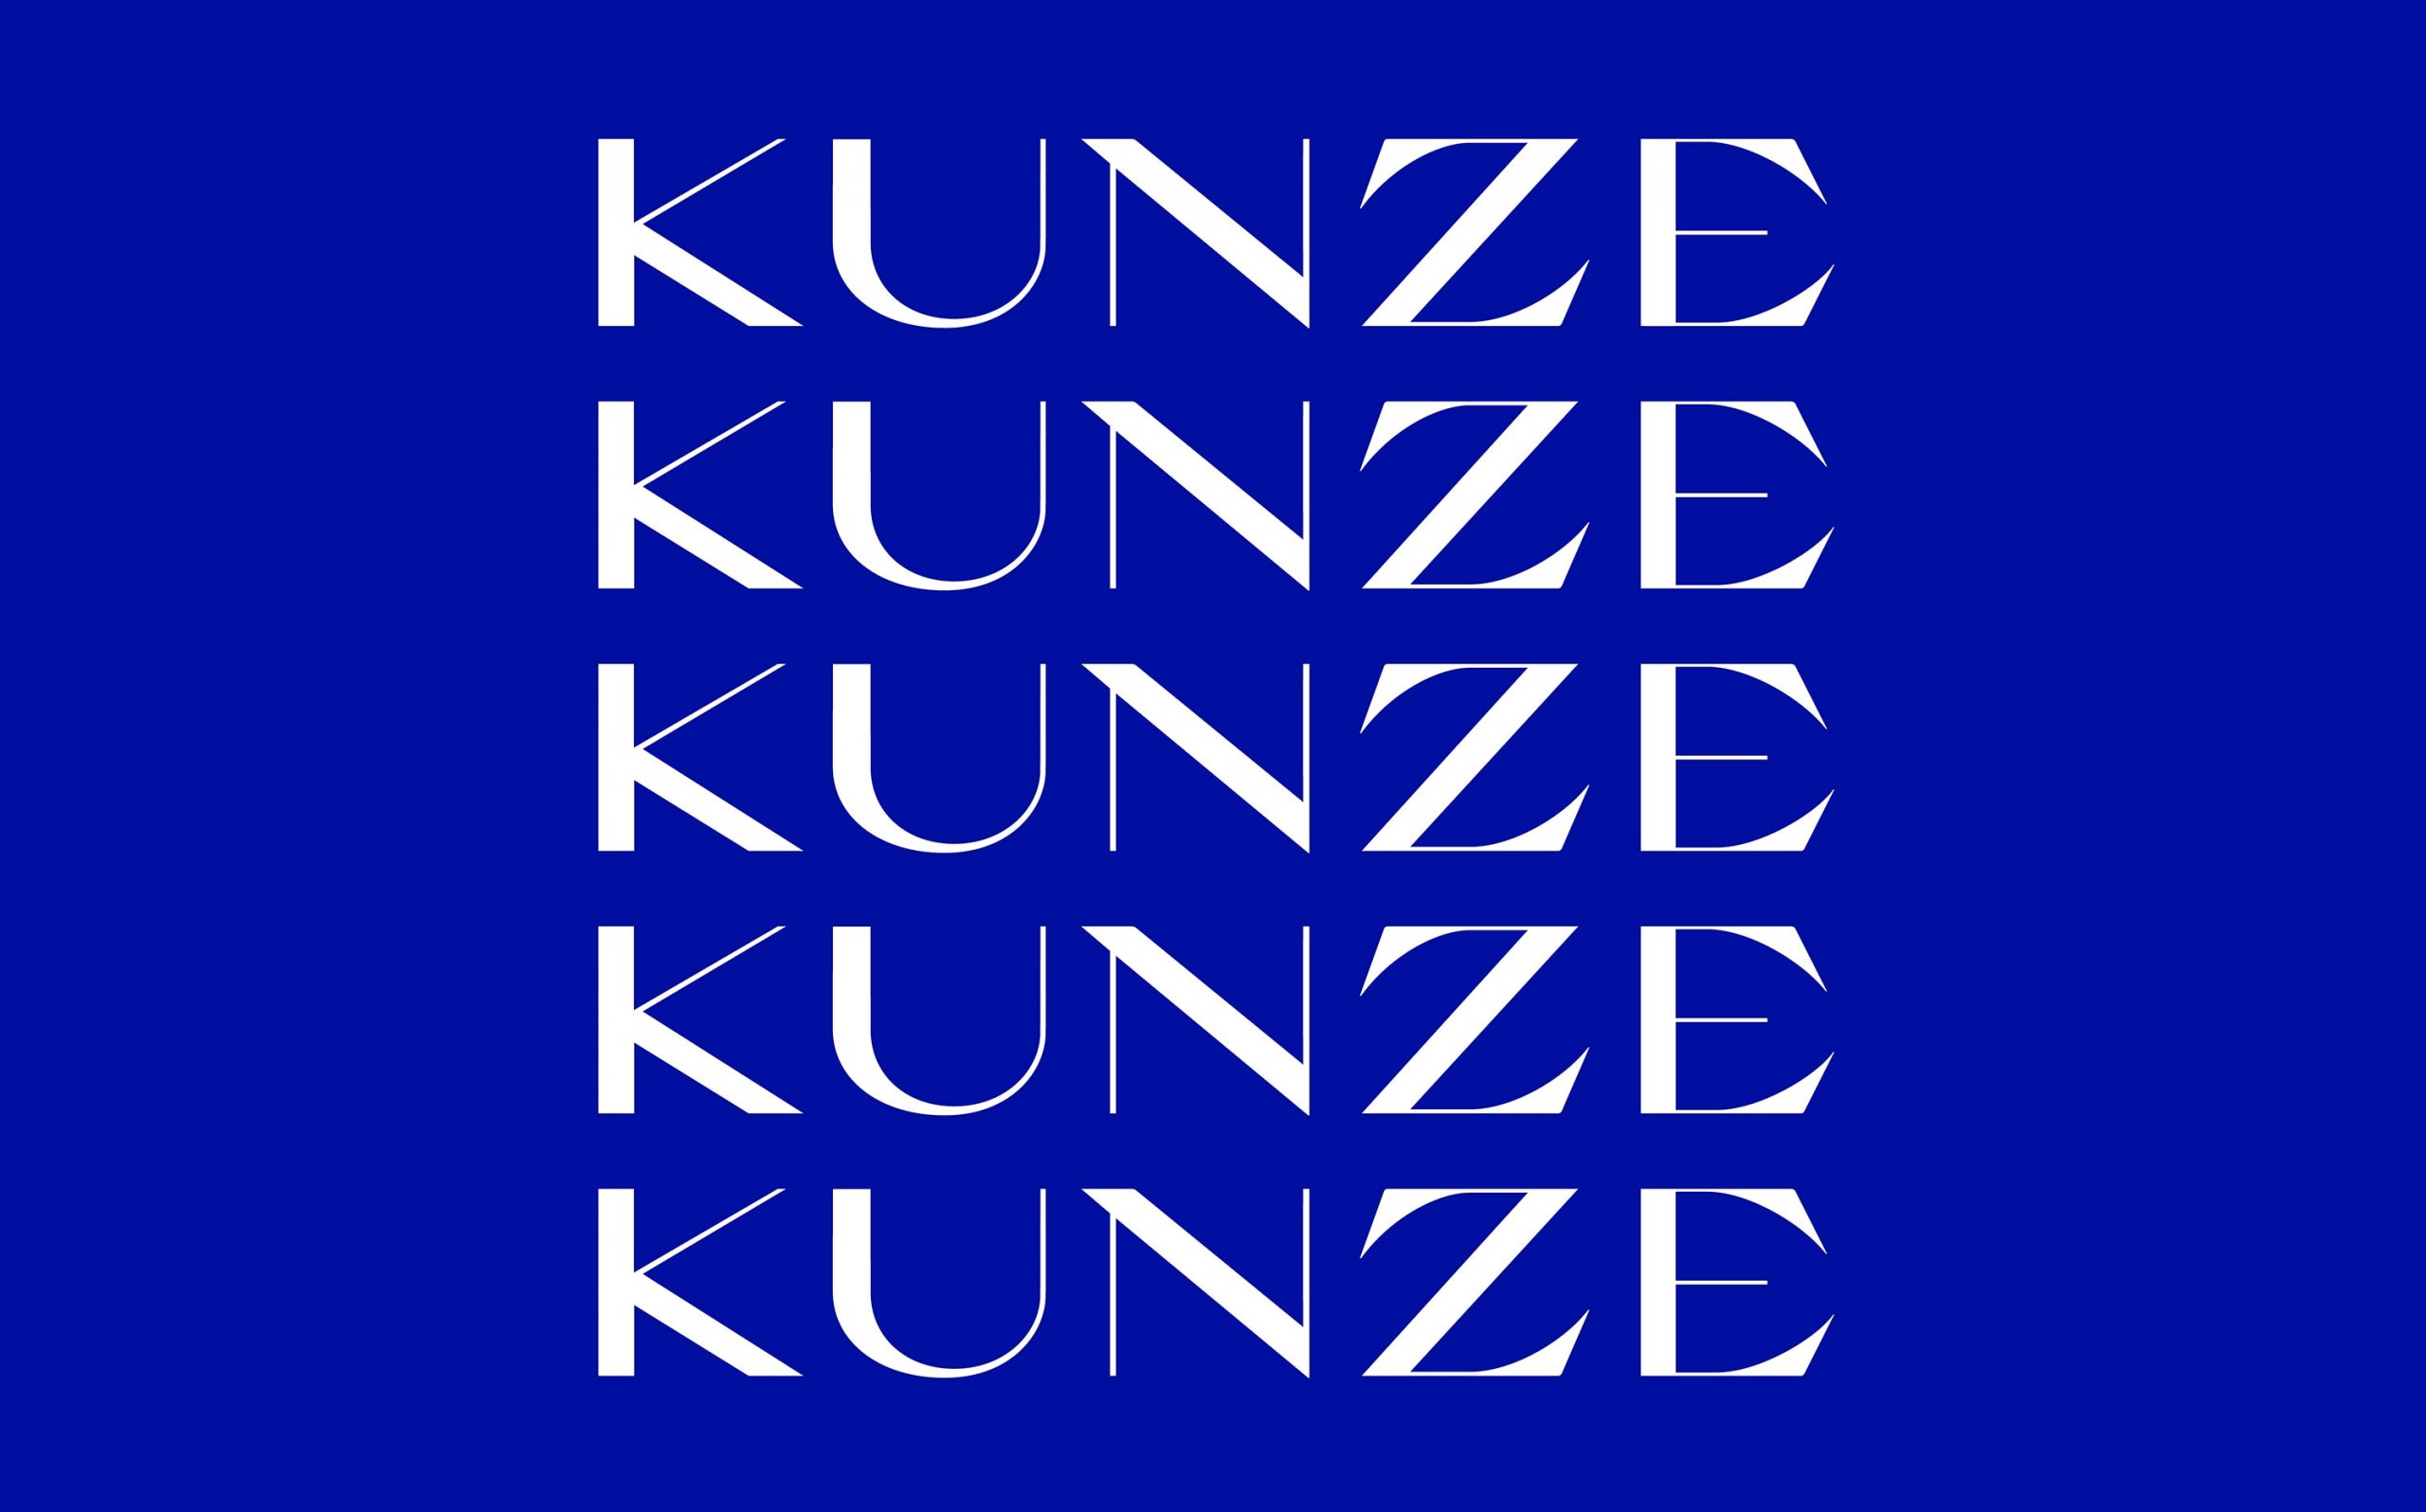 Corporate Design für Kunze Rechtsanwälte, München | Wortmarke | Keywords: Corporate Design, Branding, Contemporary Design, Blau, Blue, Typografie, Typography, Graphic Design, Grafikdesign, Abstrakte Kunst